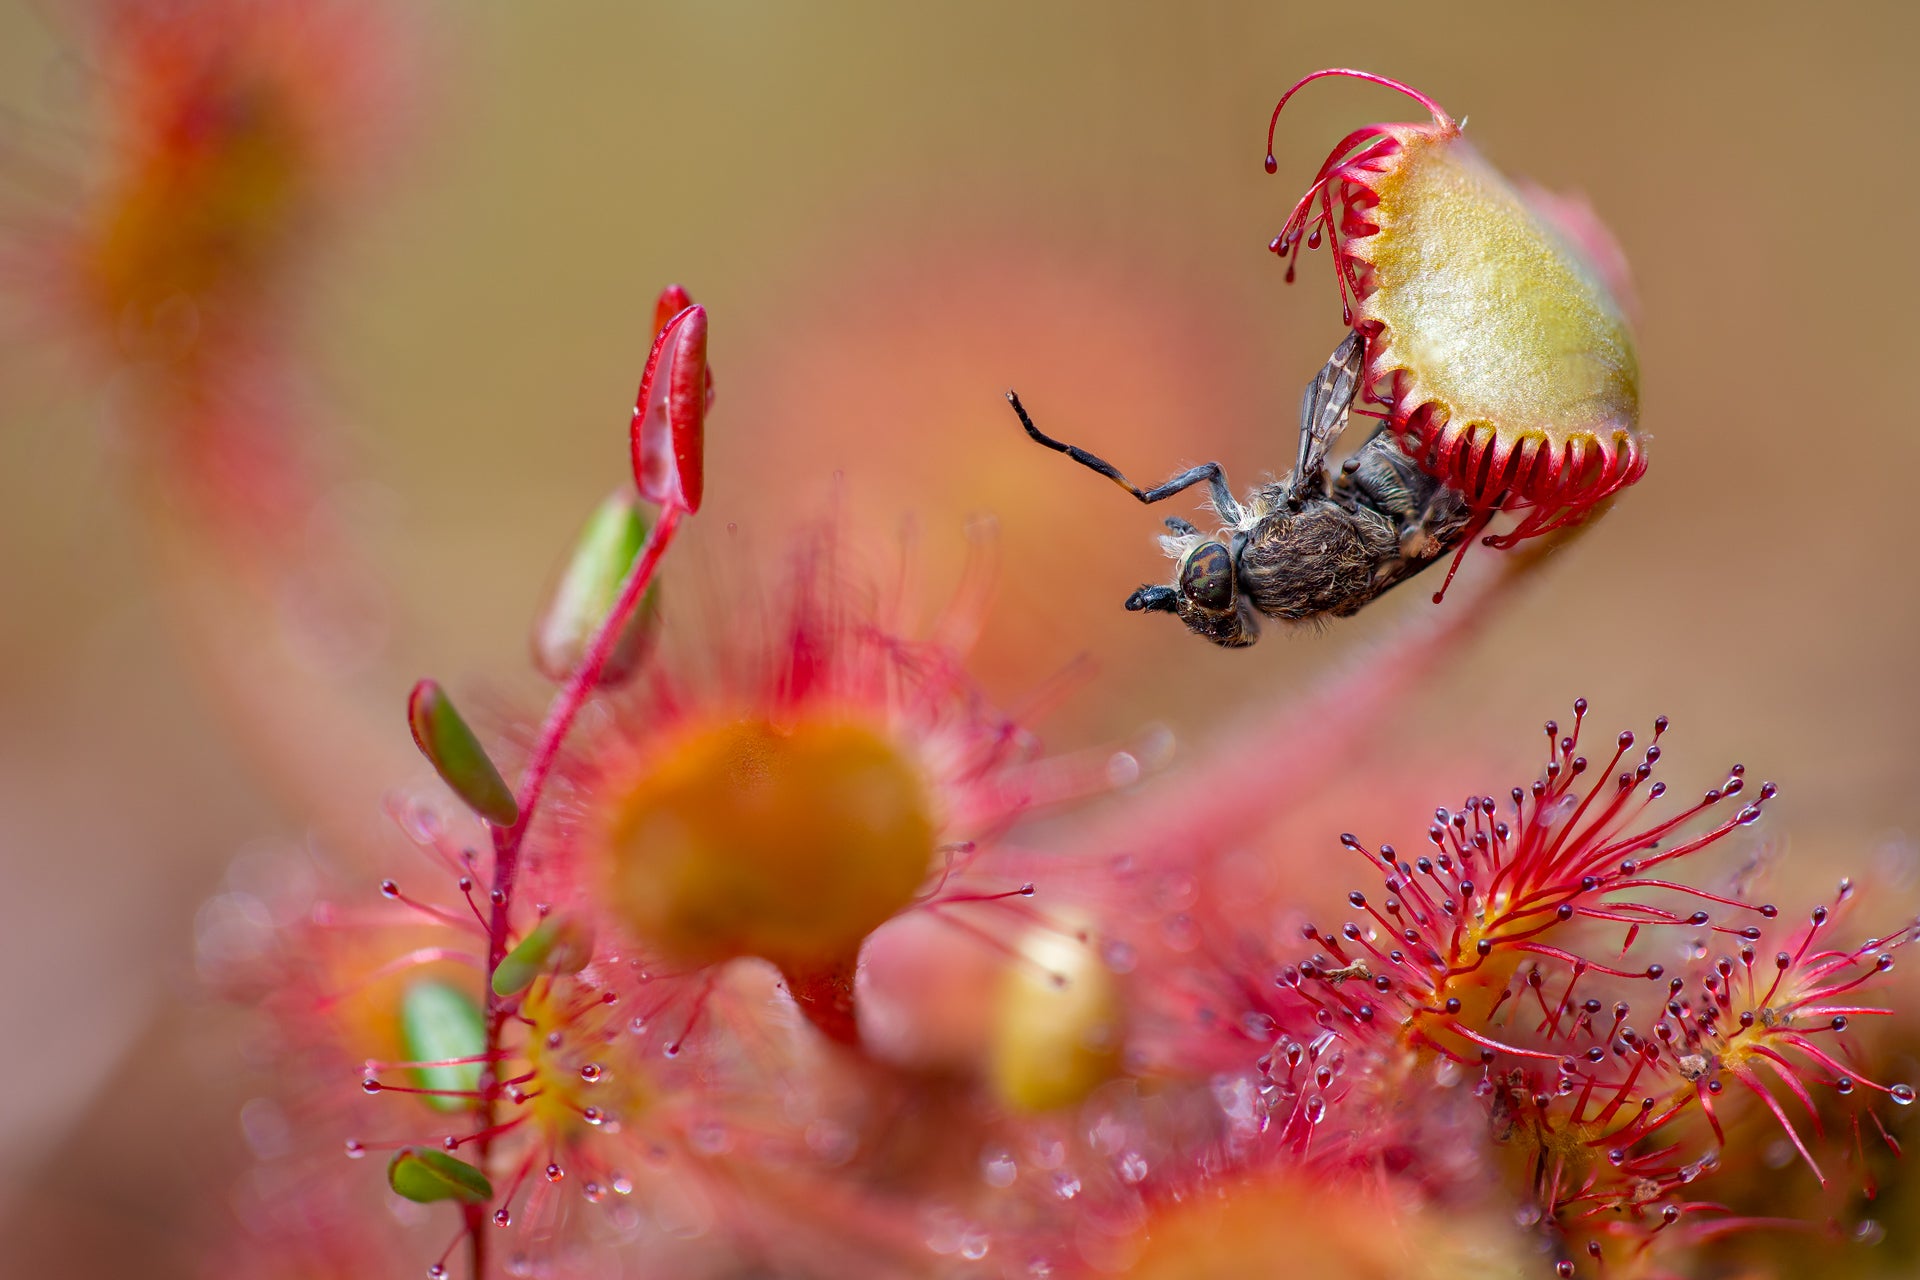 A sundew clings onto a horsefly. (Photo: Matt Doogue)